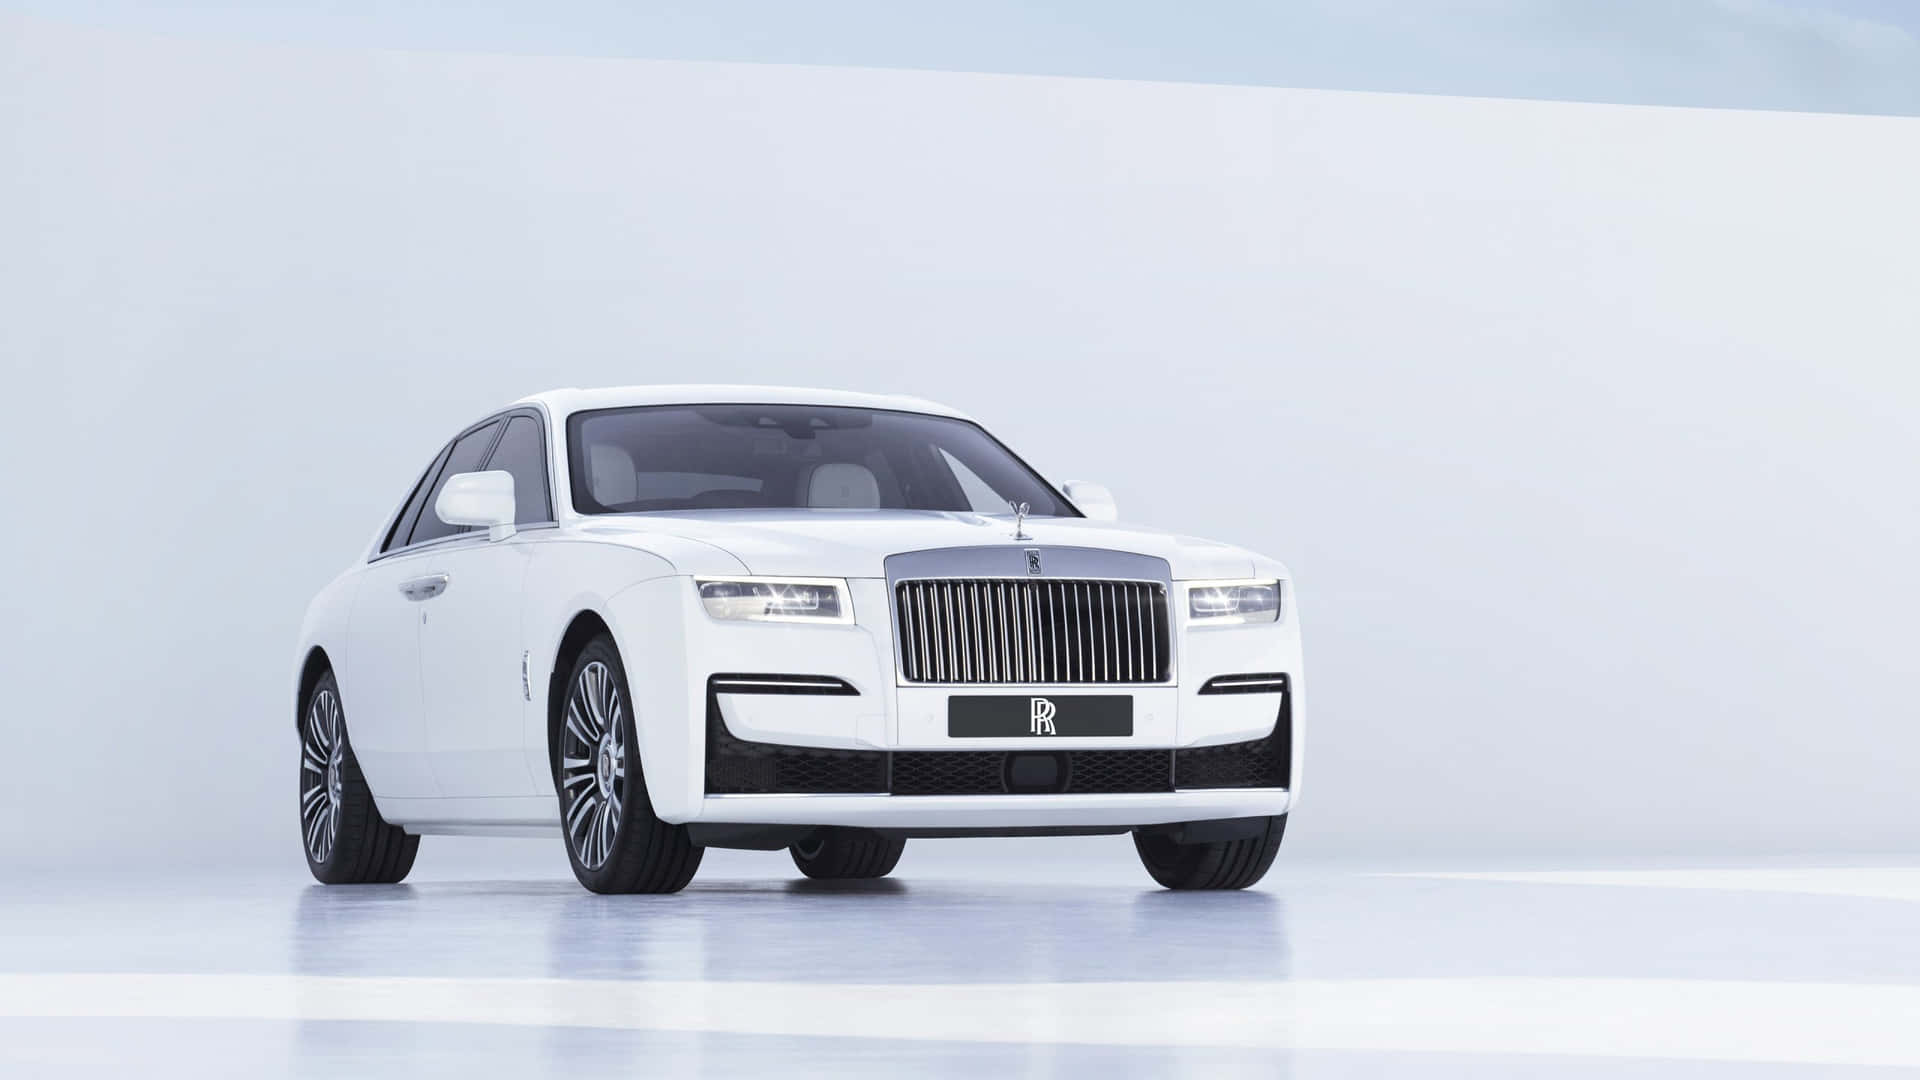 Caption: Luxury Rolls Royce Showcased at Dusk